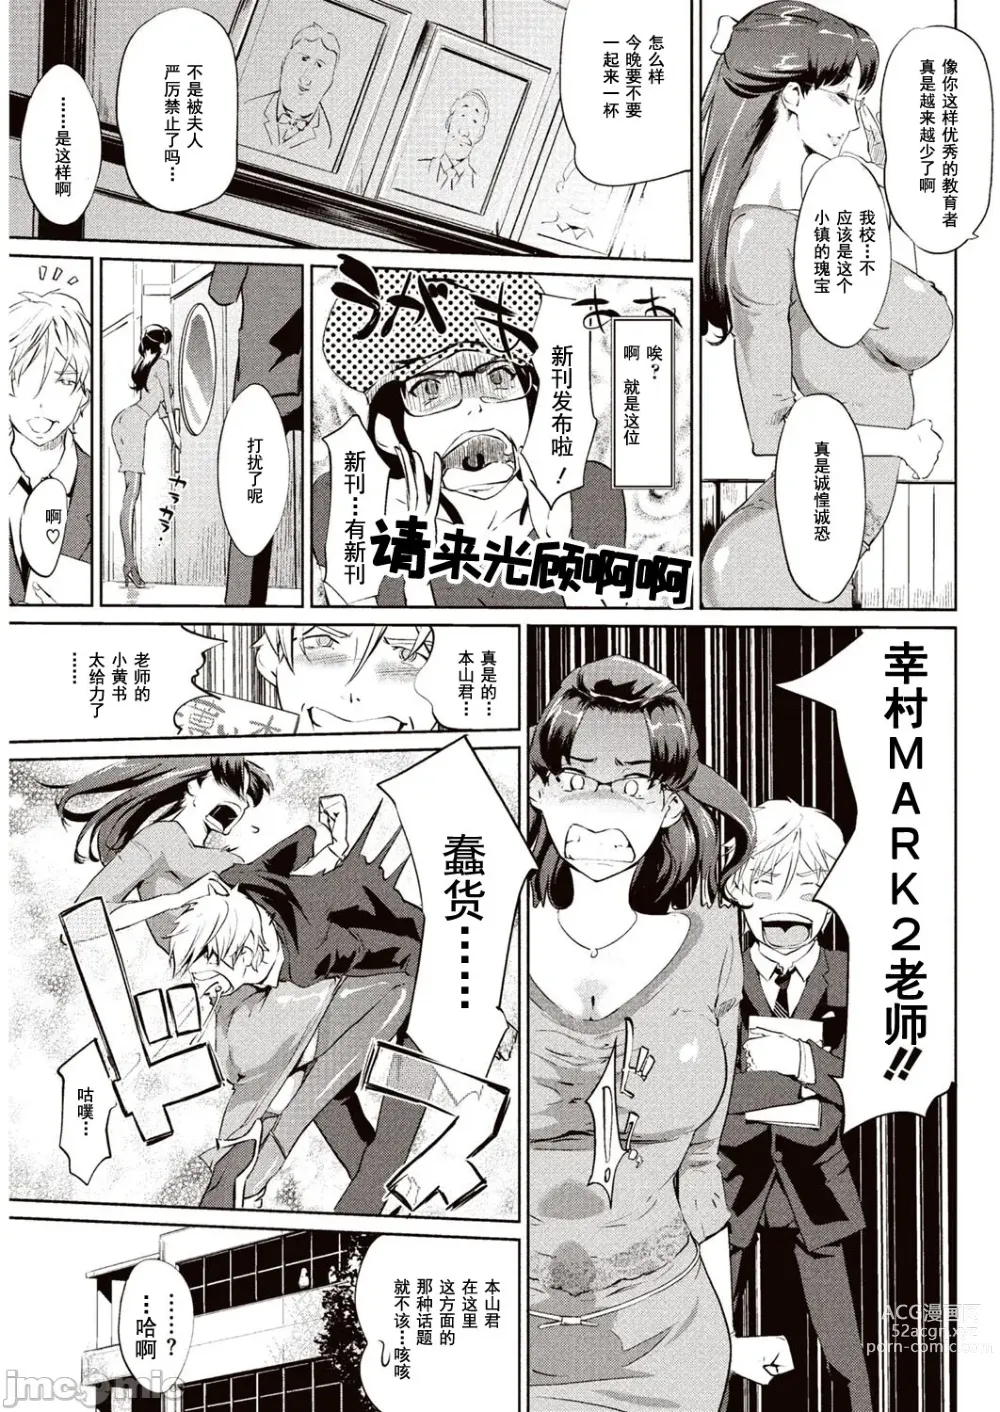 Page 6 of manga 賣作社團的招待券